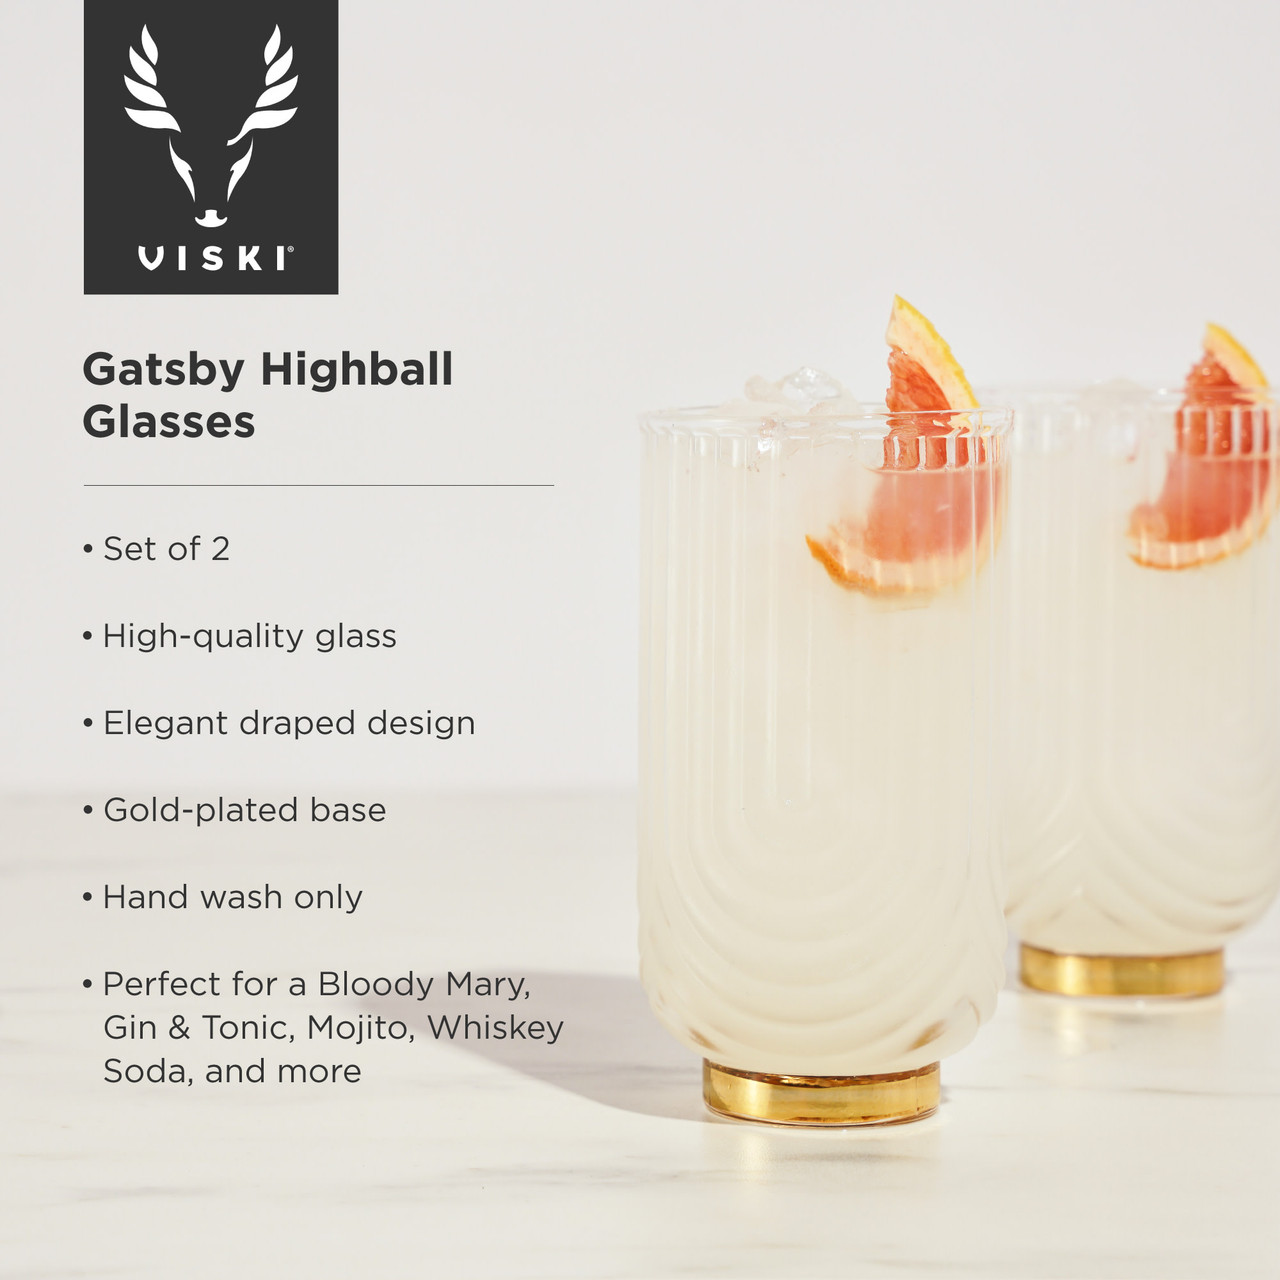 Gatsby Highball Glasses by Viski